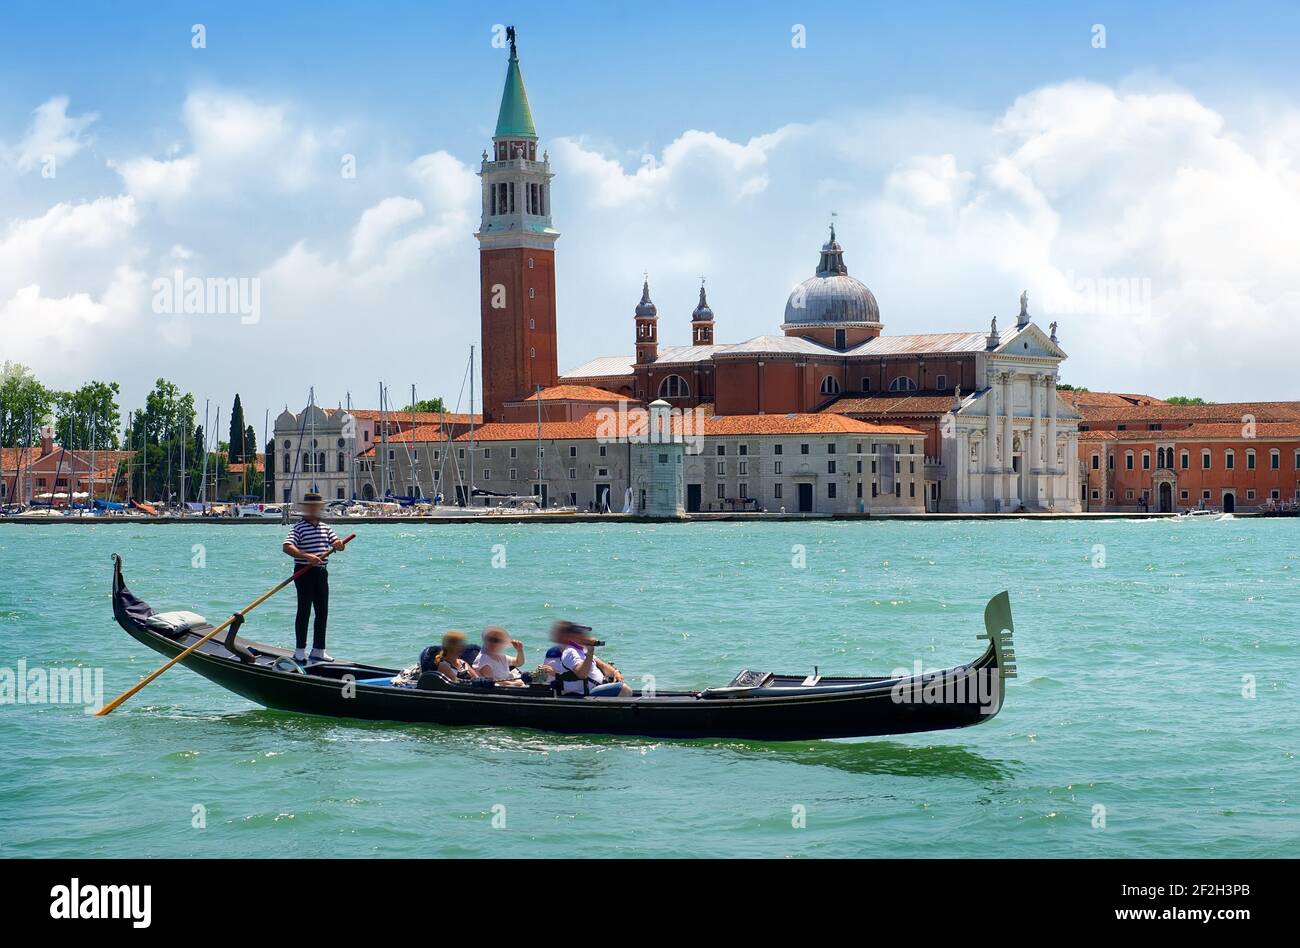 Tourists riding in gondola on Grand canal near San Giorgio Maggiore in Venice, Italy Stock Photo